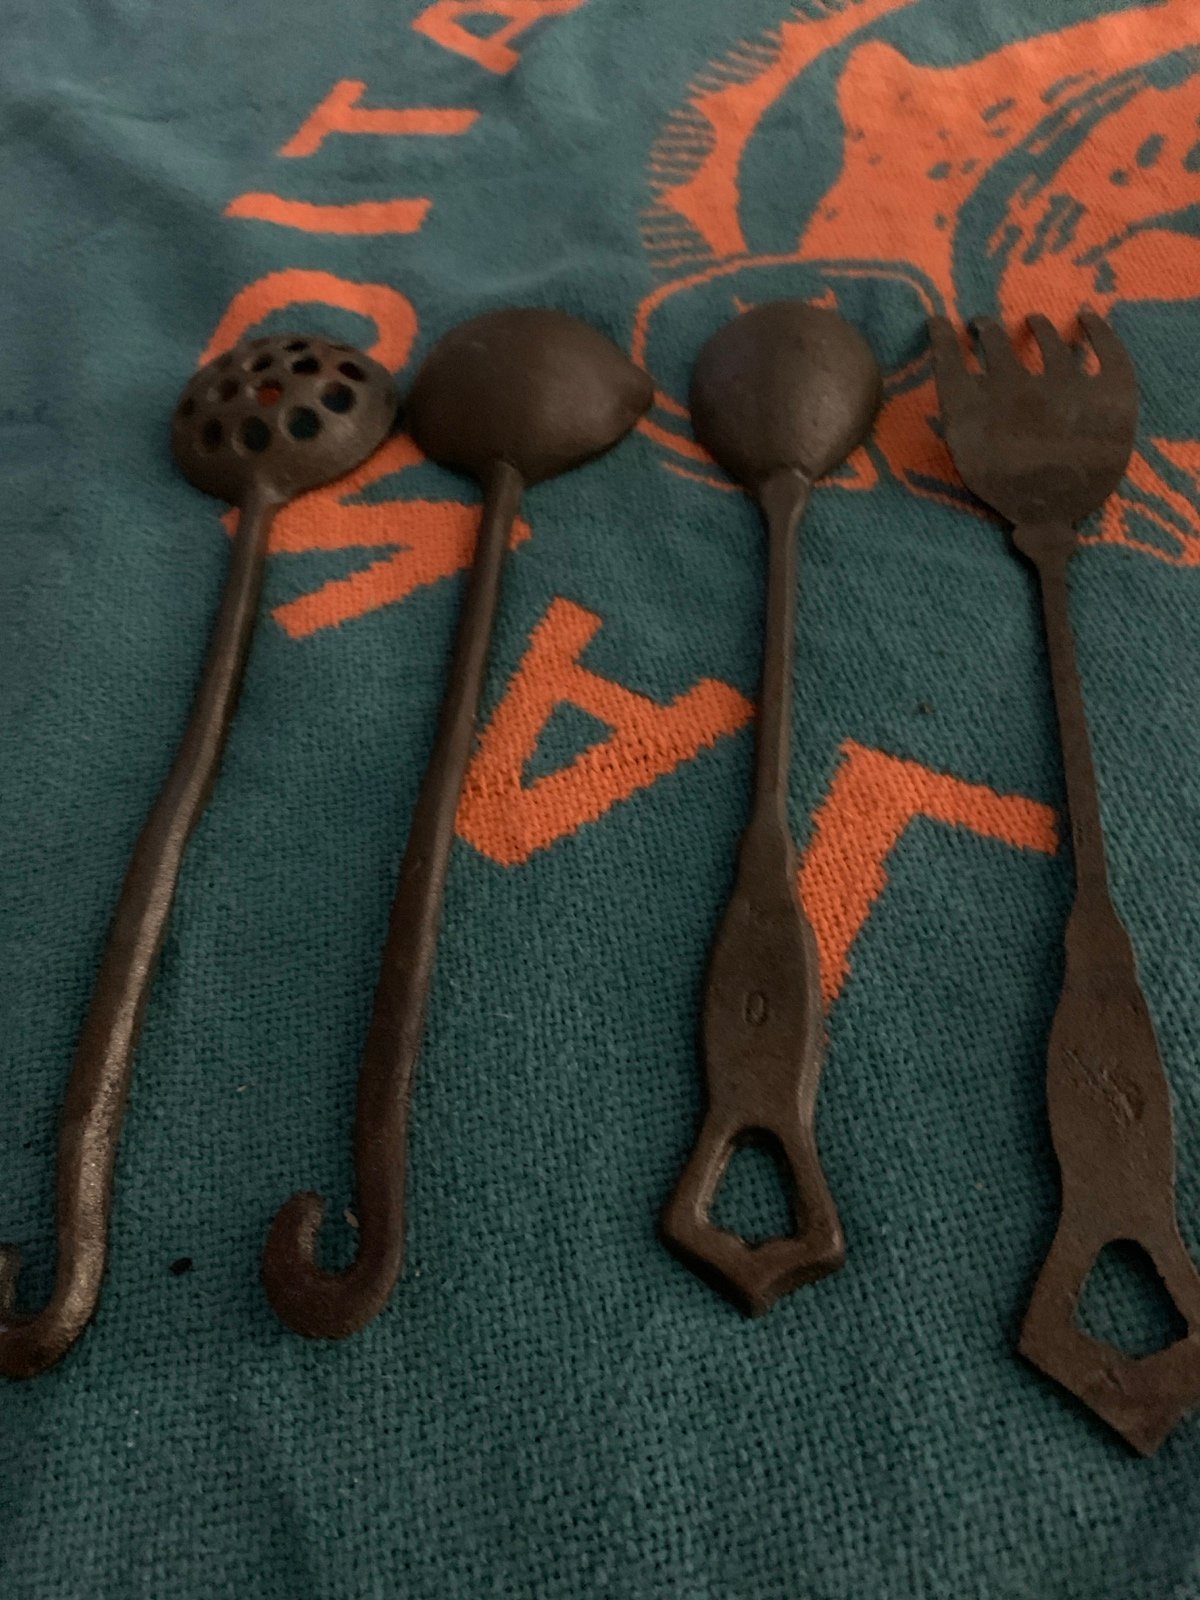 Vintage cast iron utensils CoFVzKHYs